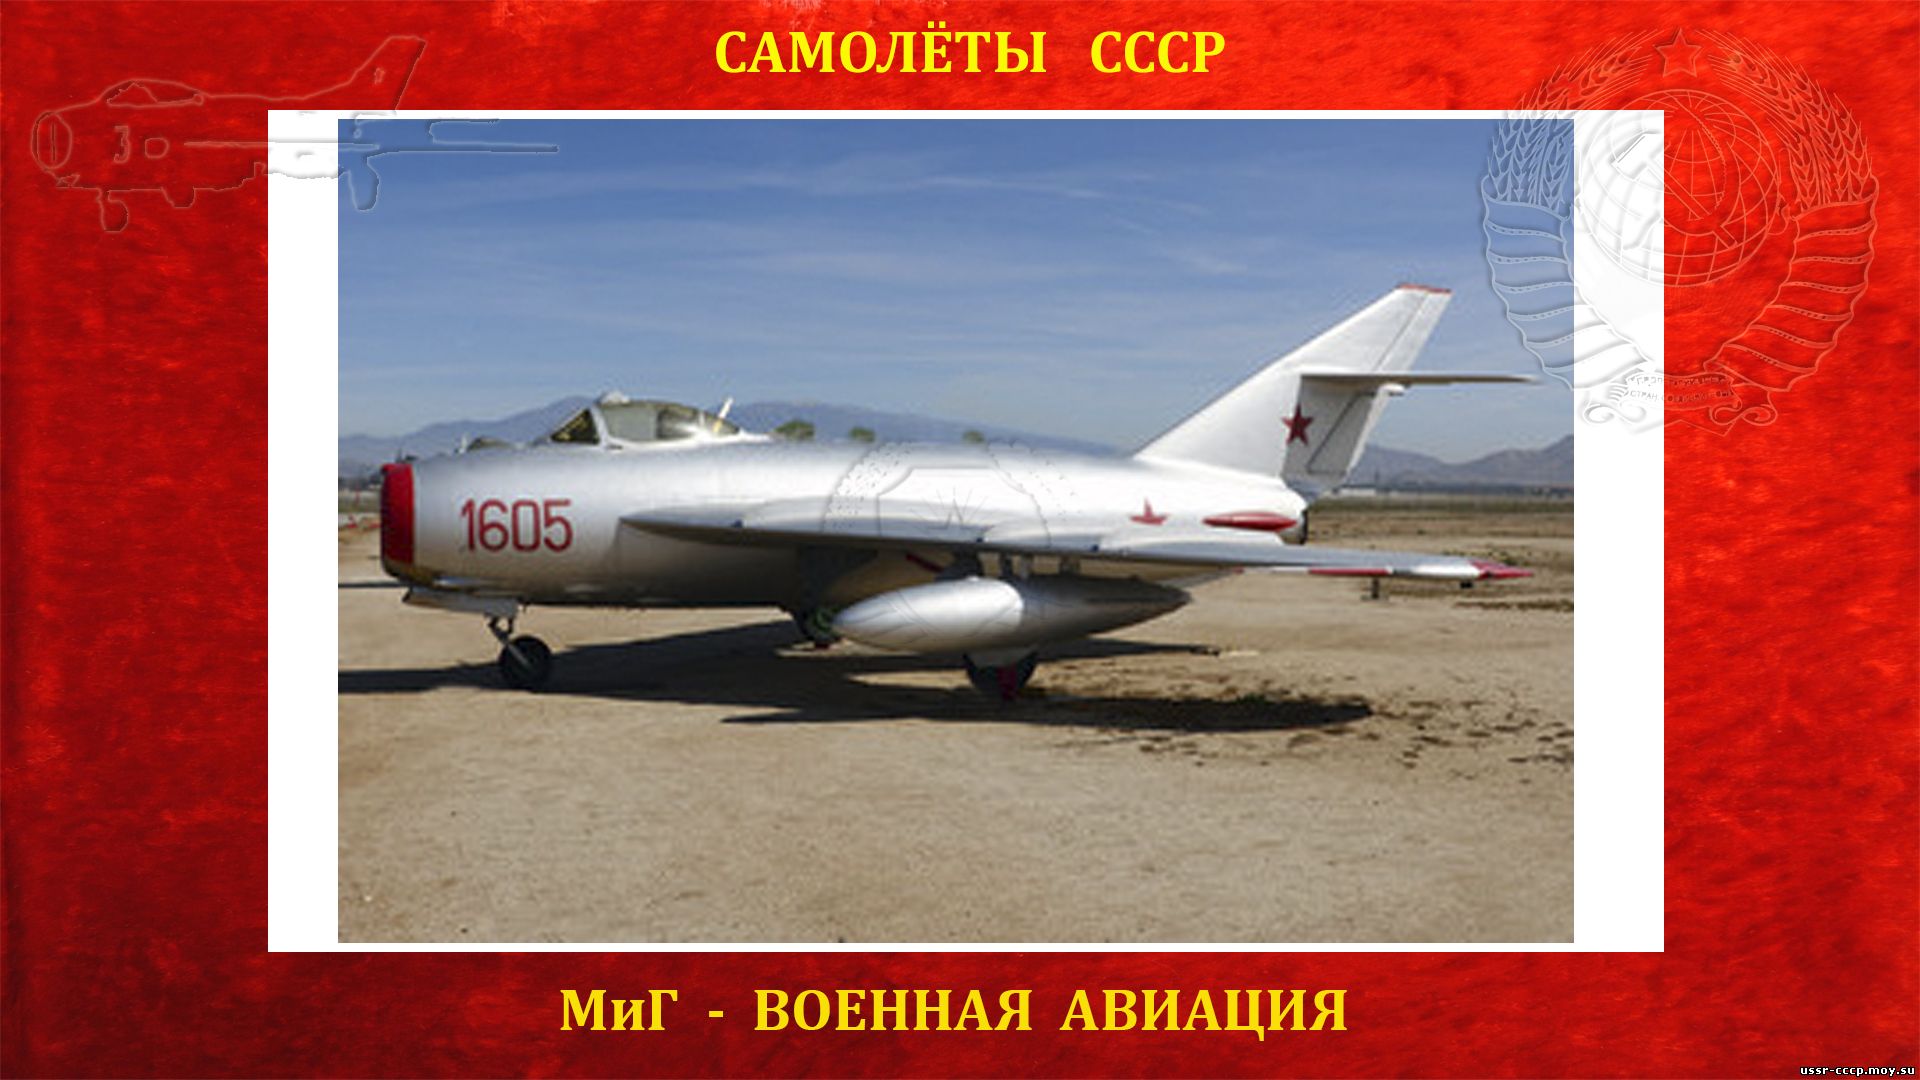 МиГ-17 - Советский реактивный истребитель - (Полное описание)